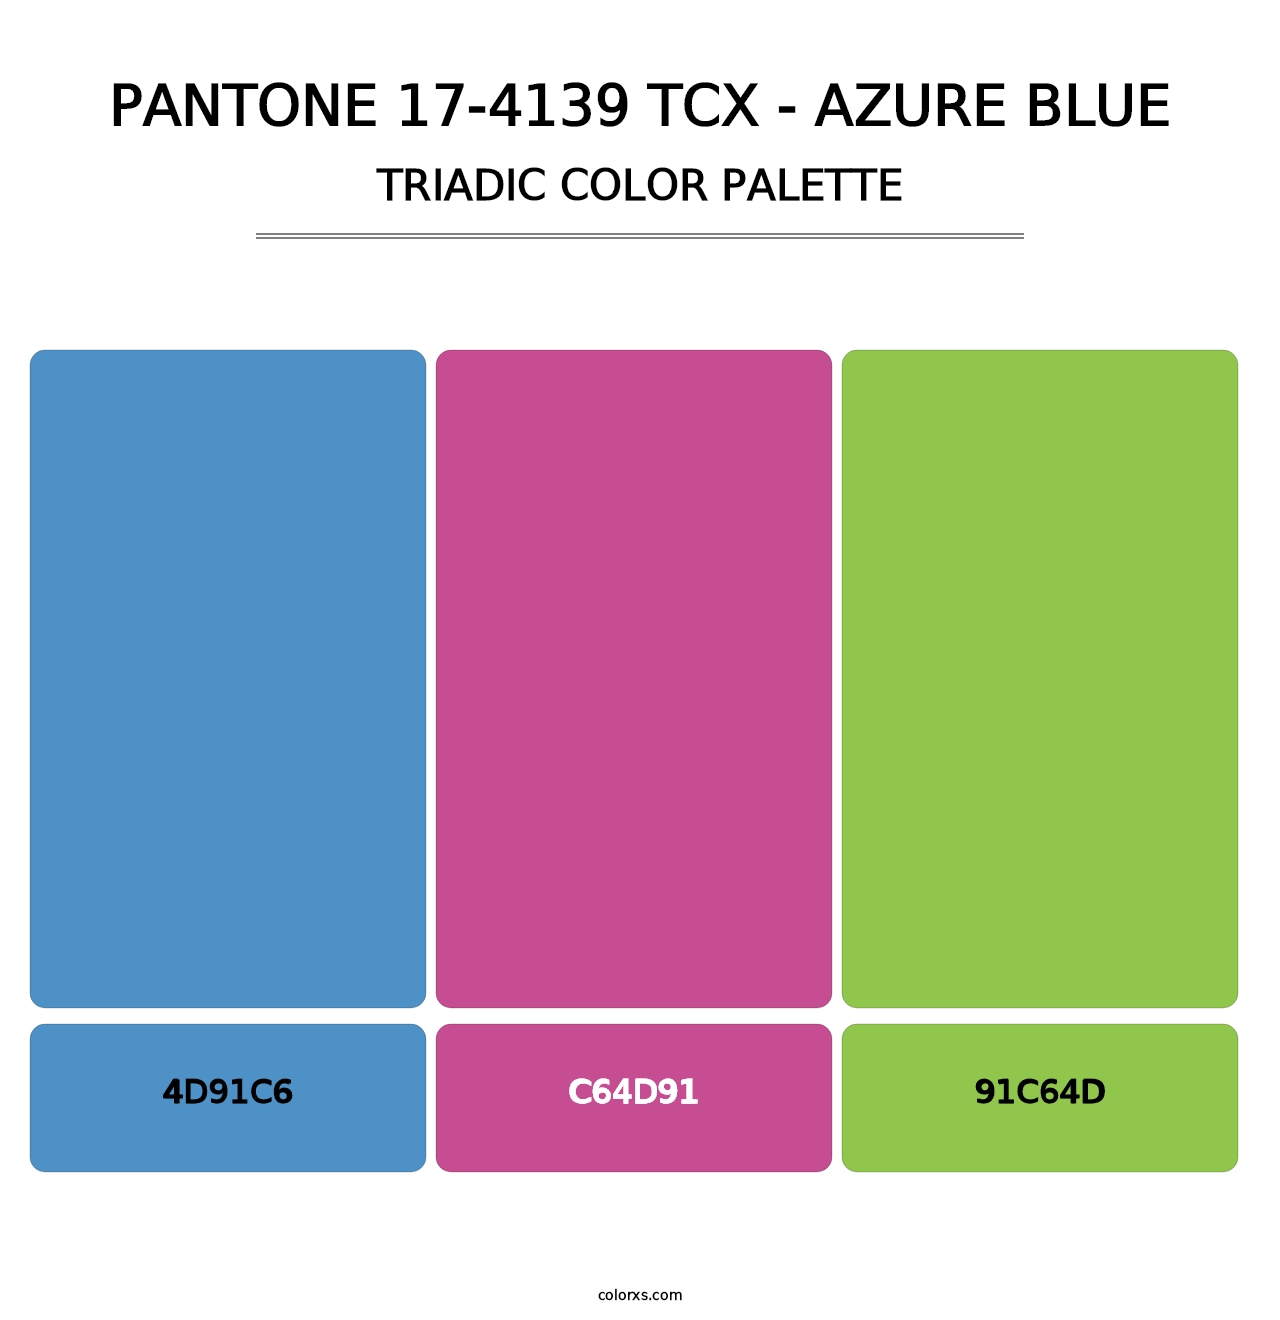 PANTONE 17-4139 TCX - Azure Blue - Triadic Color Palette